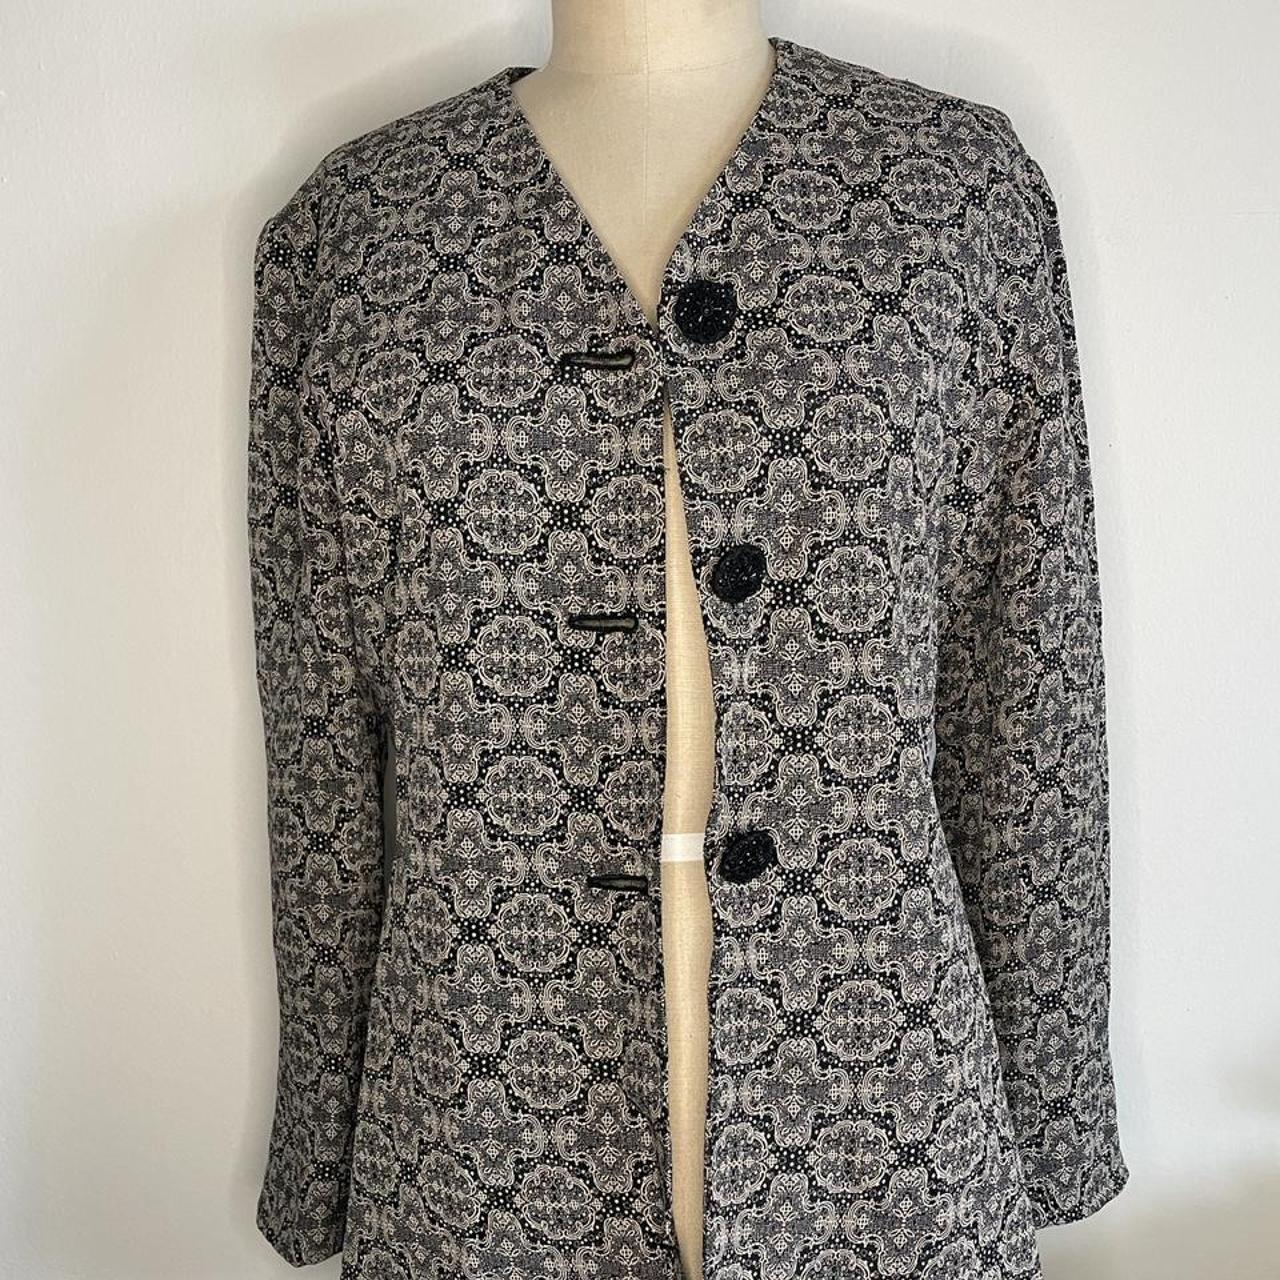 Product Image 3 - Gorgeous vintage jacket! 😍 Beautiful